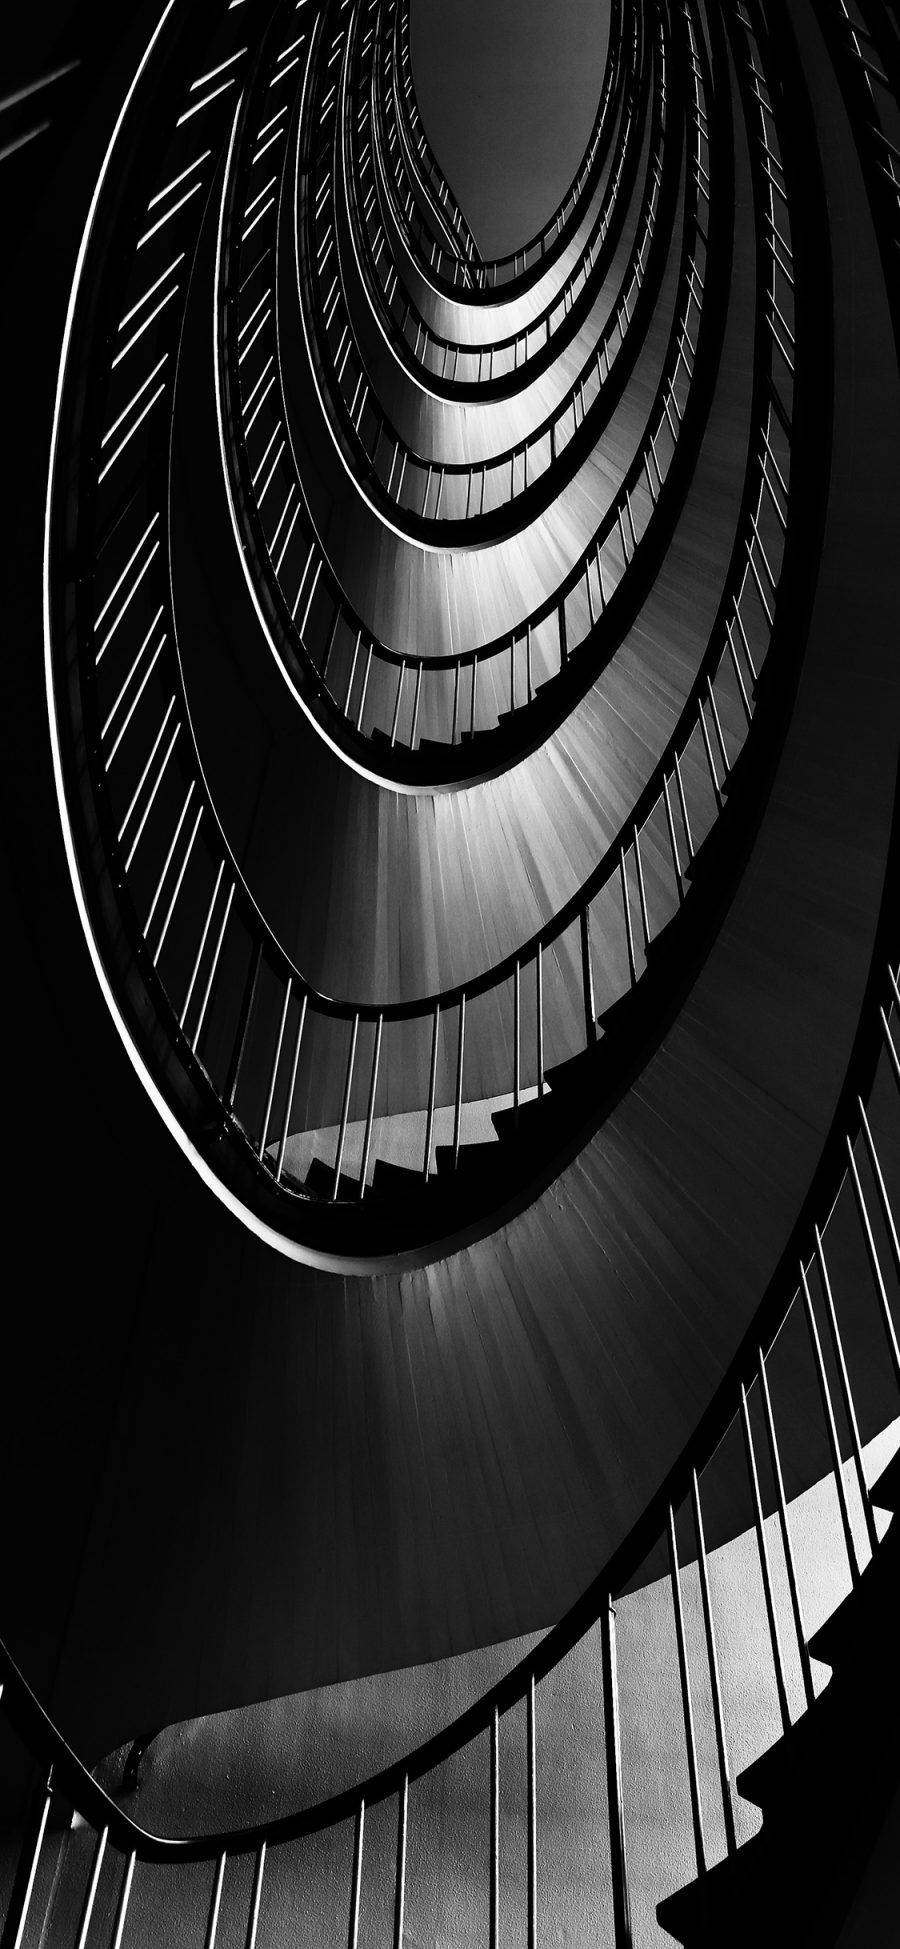 [2436×1125]楼梯 建筑 黑白 圆形 旋转 苹果手机壁纸图片